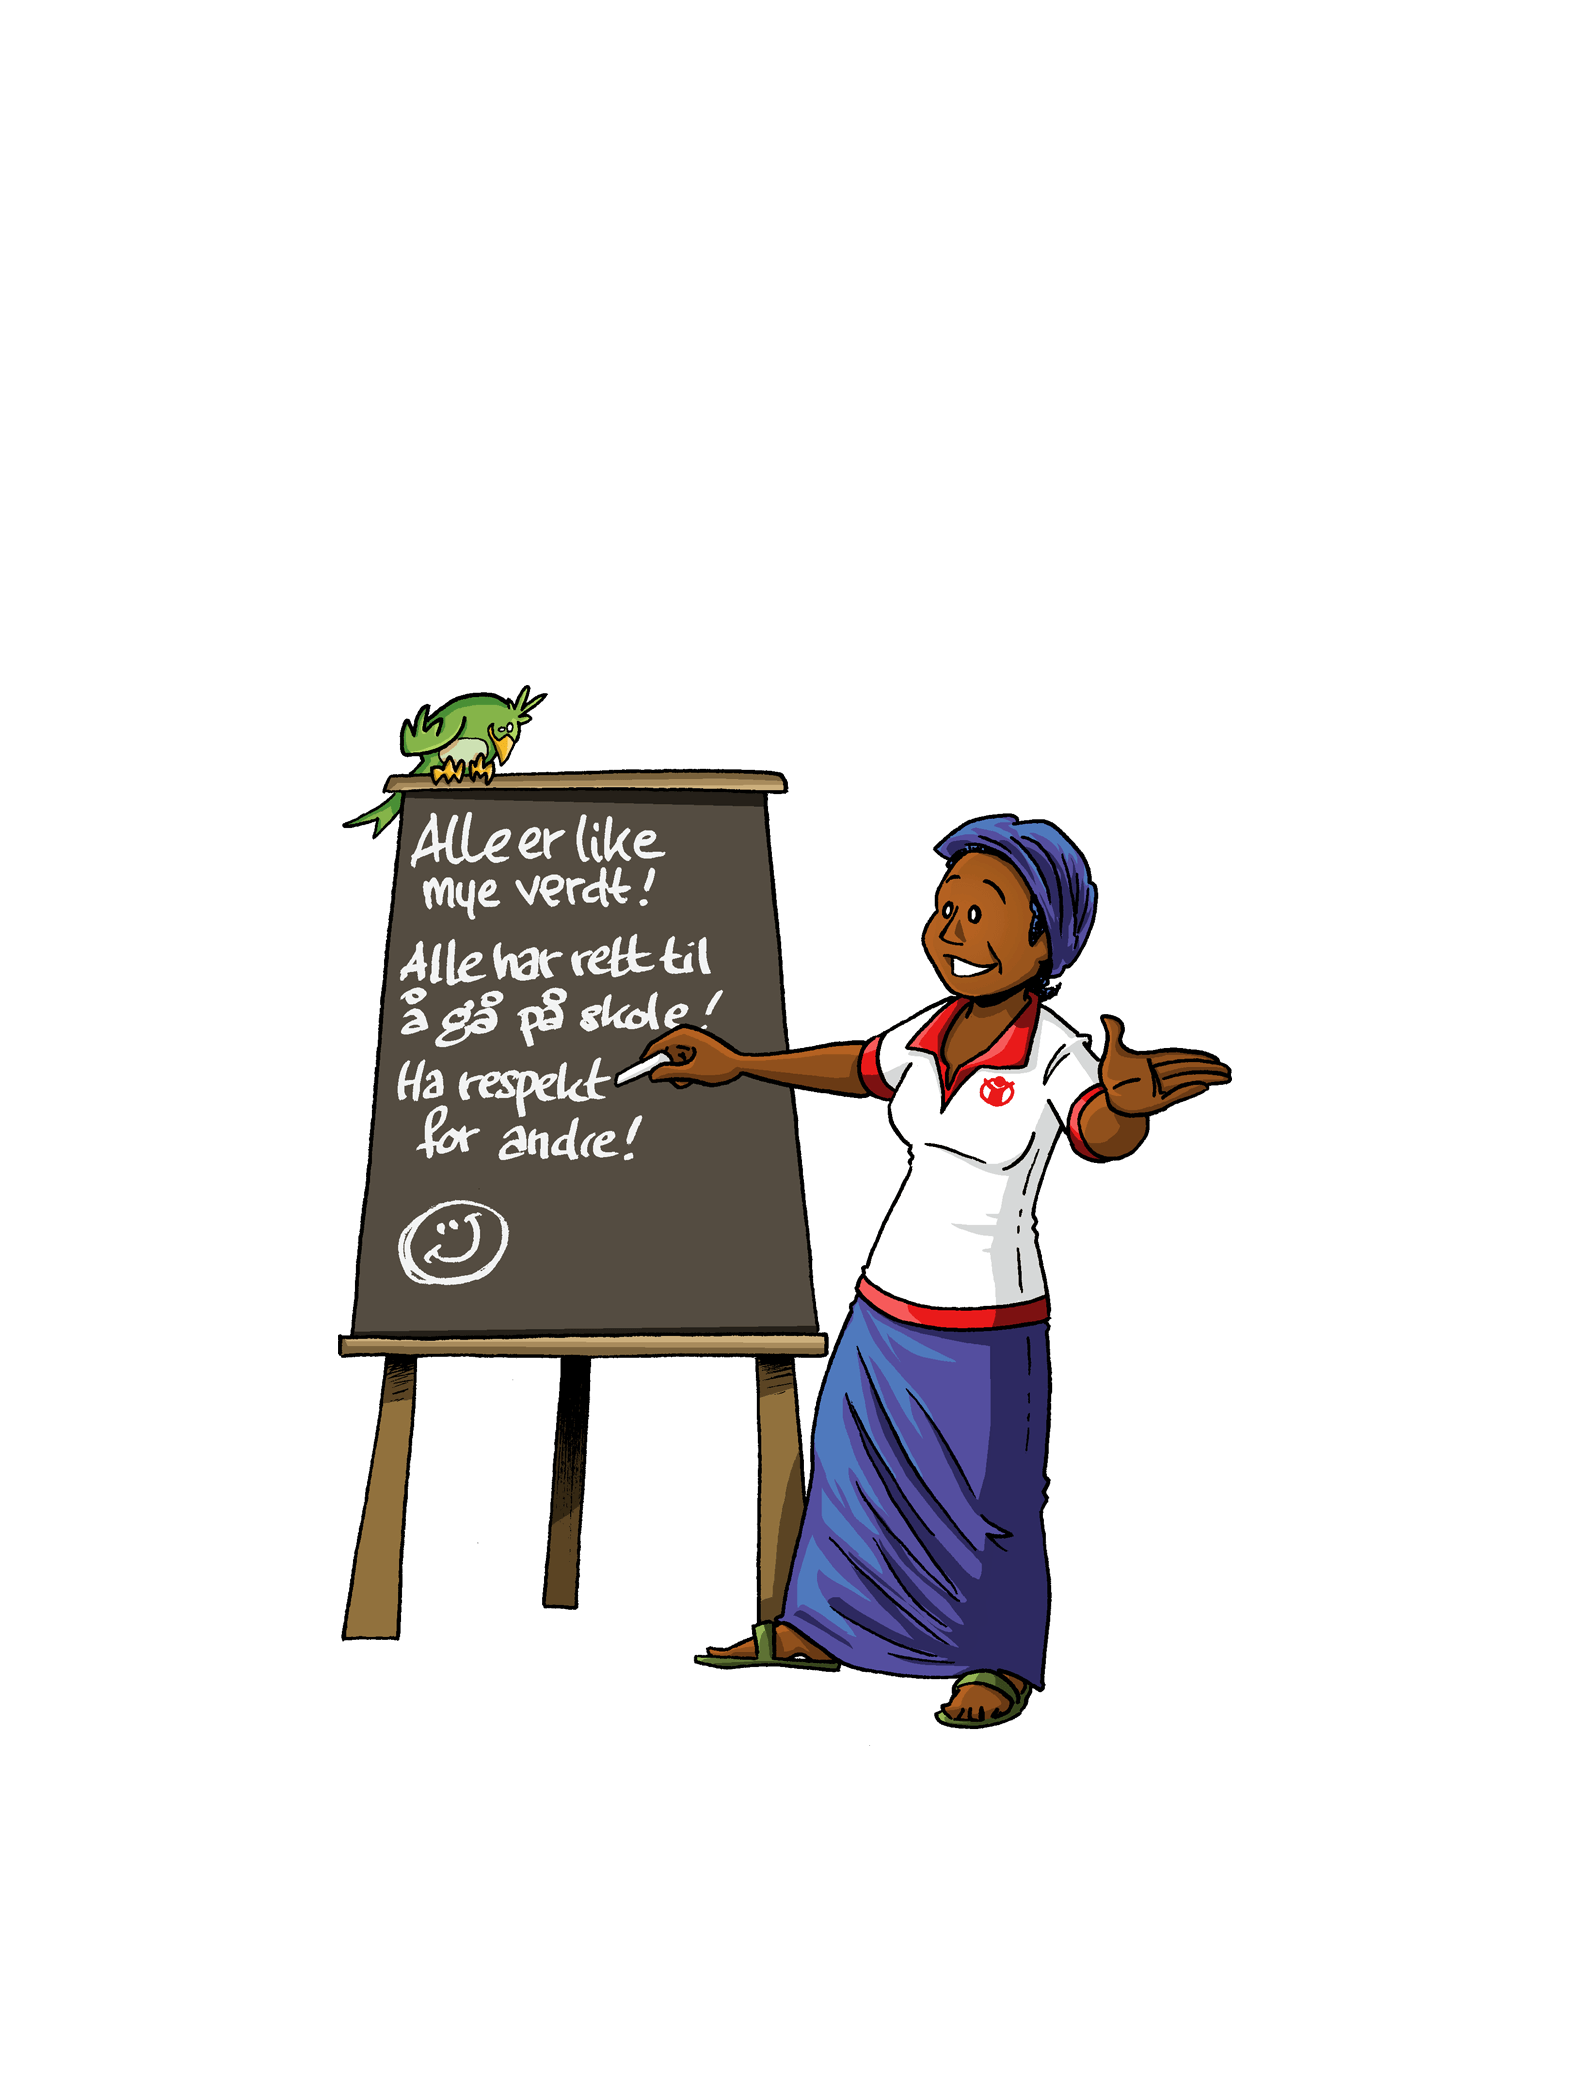 Illustrasjon av en dame som står foran en tavle og underviser. På tavla står det "Alle er like mye verdt! Alle har rett til å gå på skole! Ha respekt for andre!"